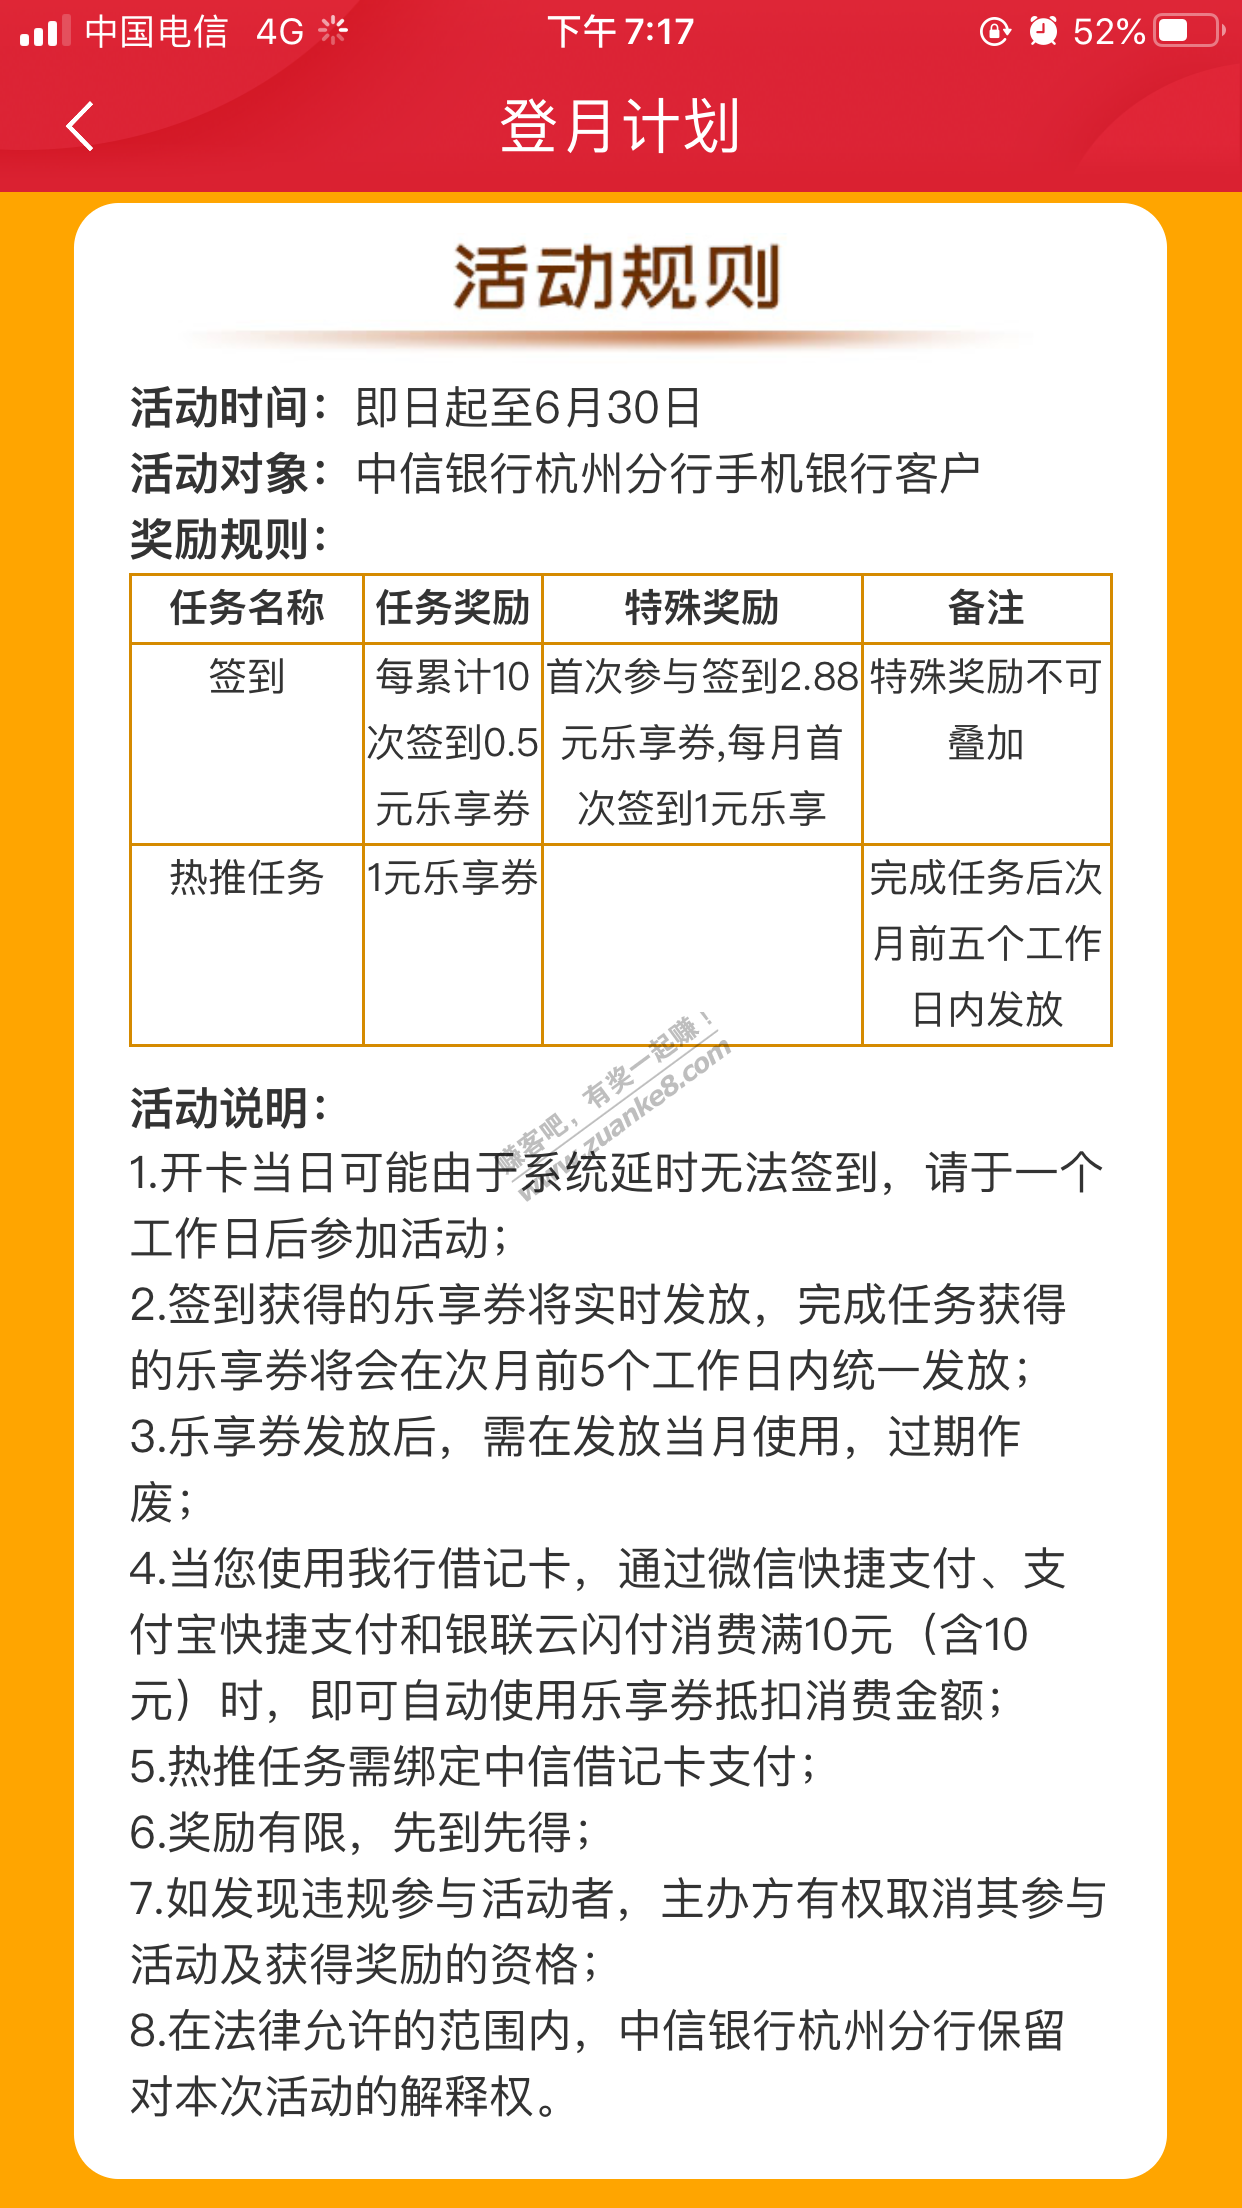 中信银行 2.88乐享券 转账可tx 应该限制浙江-惠小助(52huixz.com)